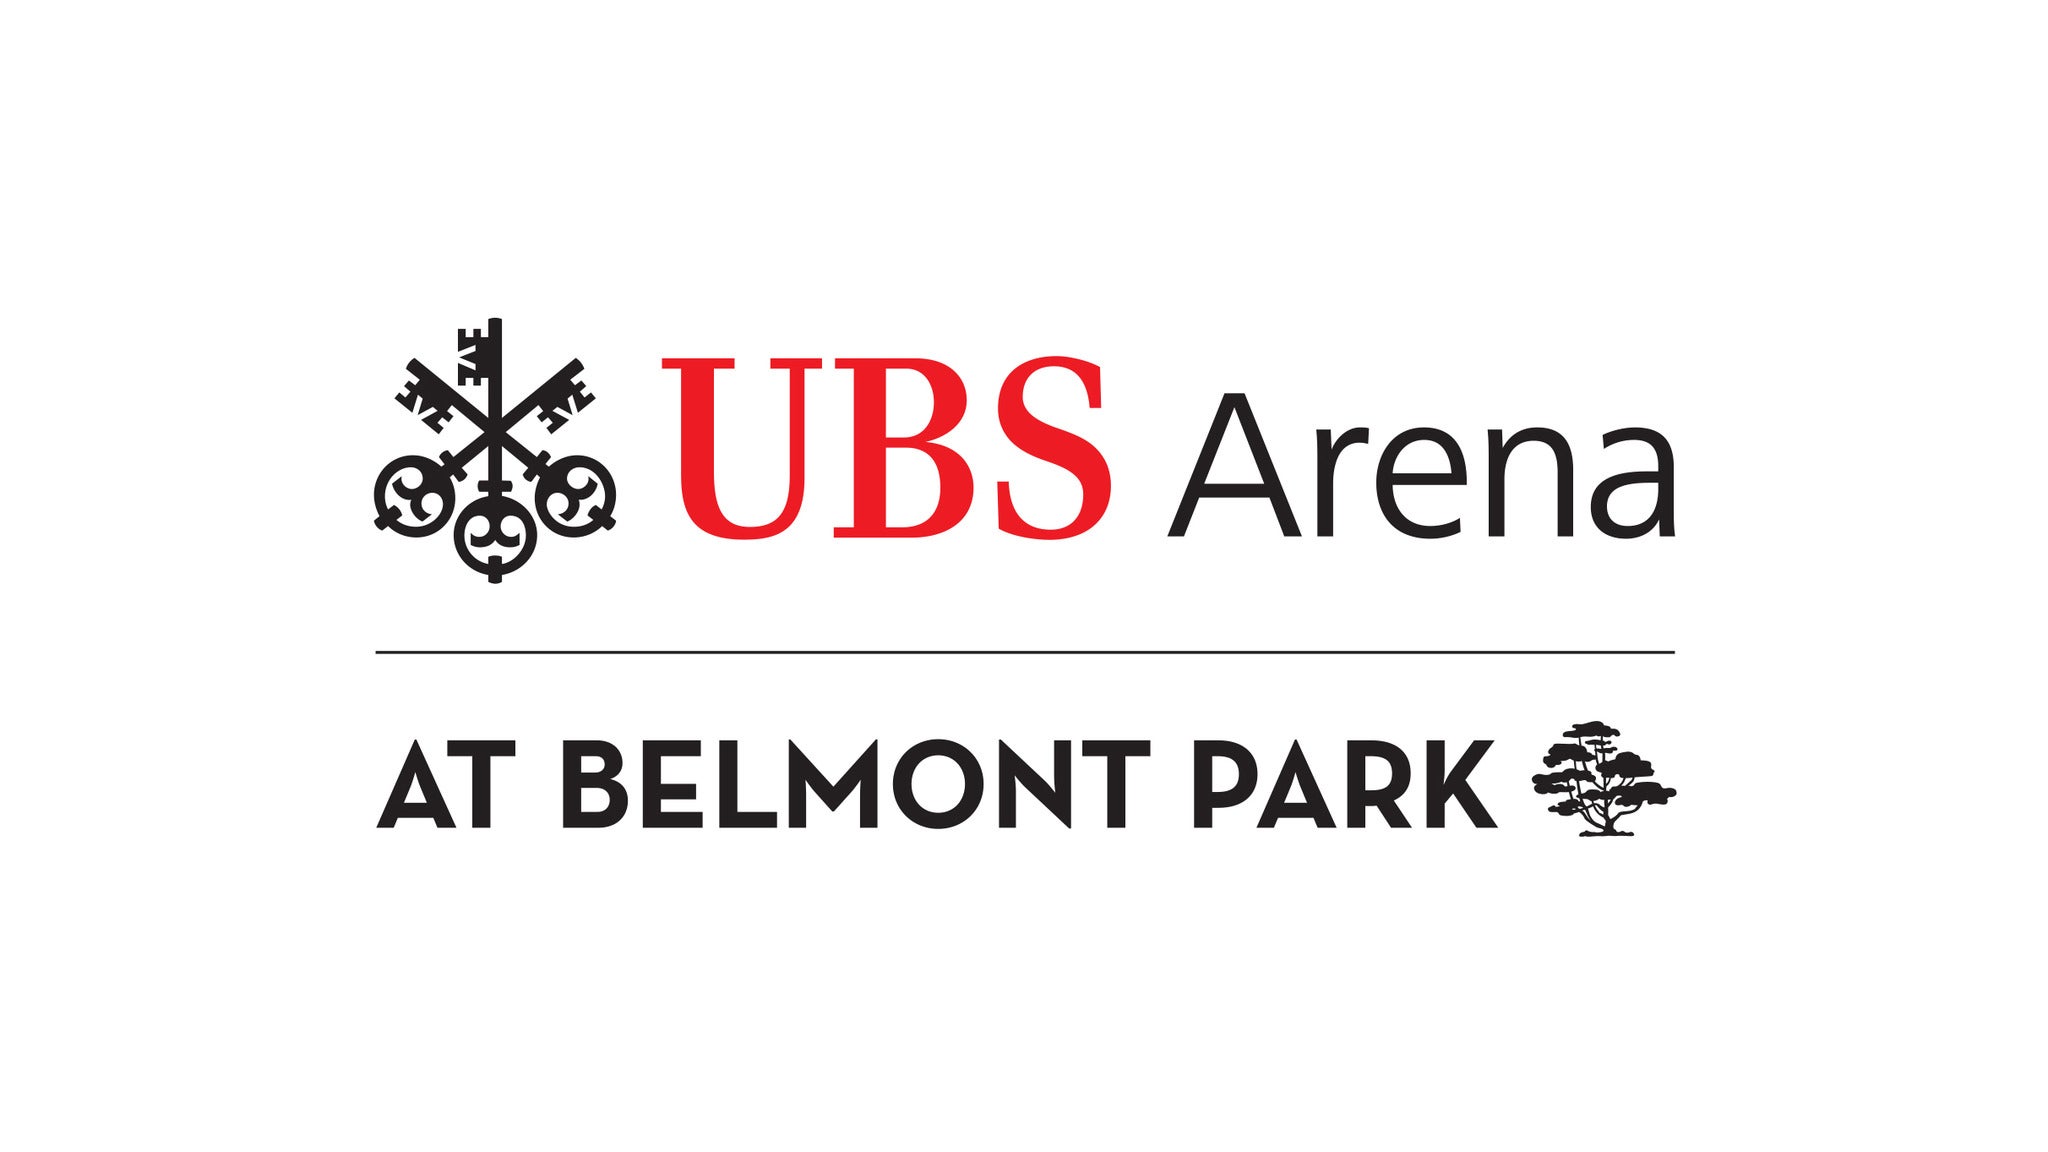 UBS Arena Parking: Sesame Street Live! in Belmont Park - Long Island promo photo for Internet presale offer code